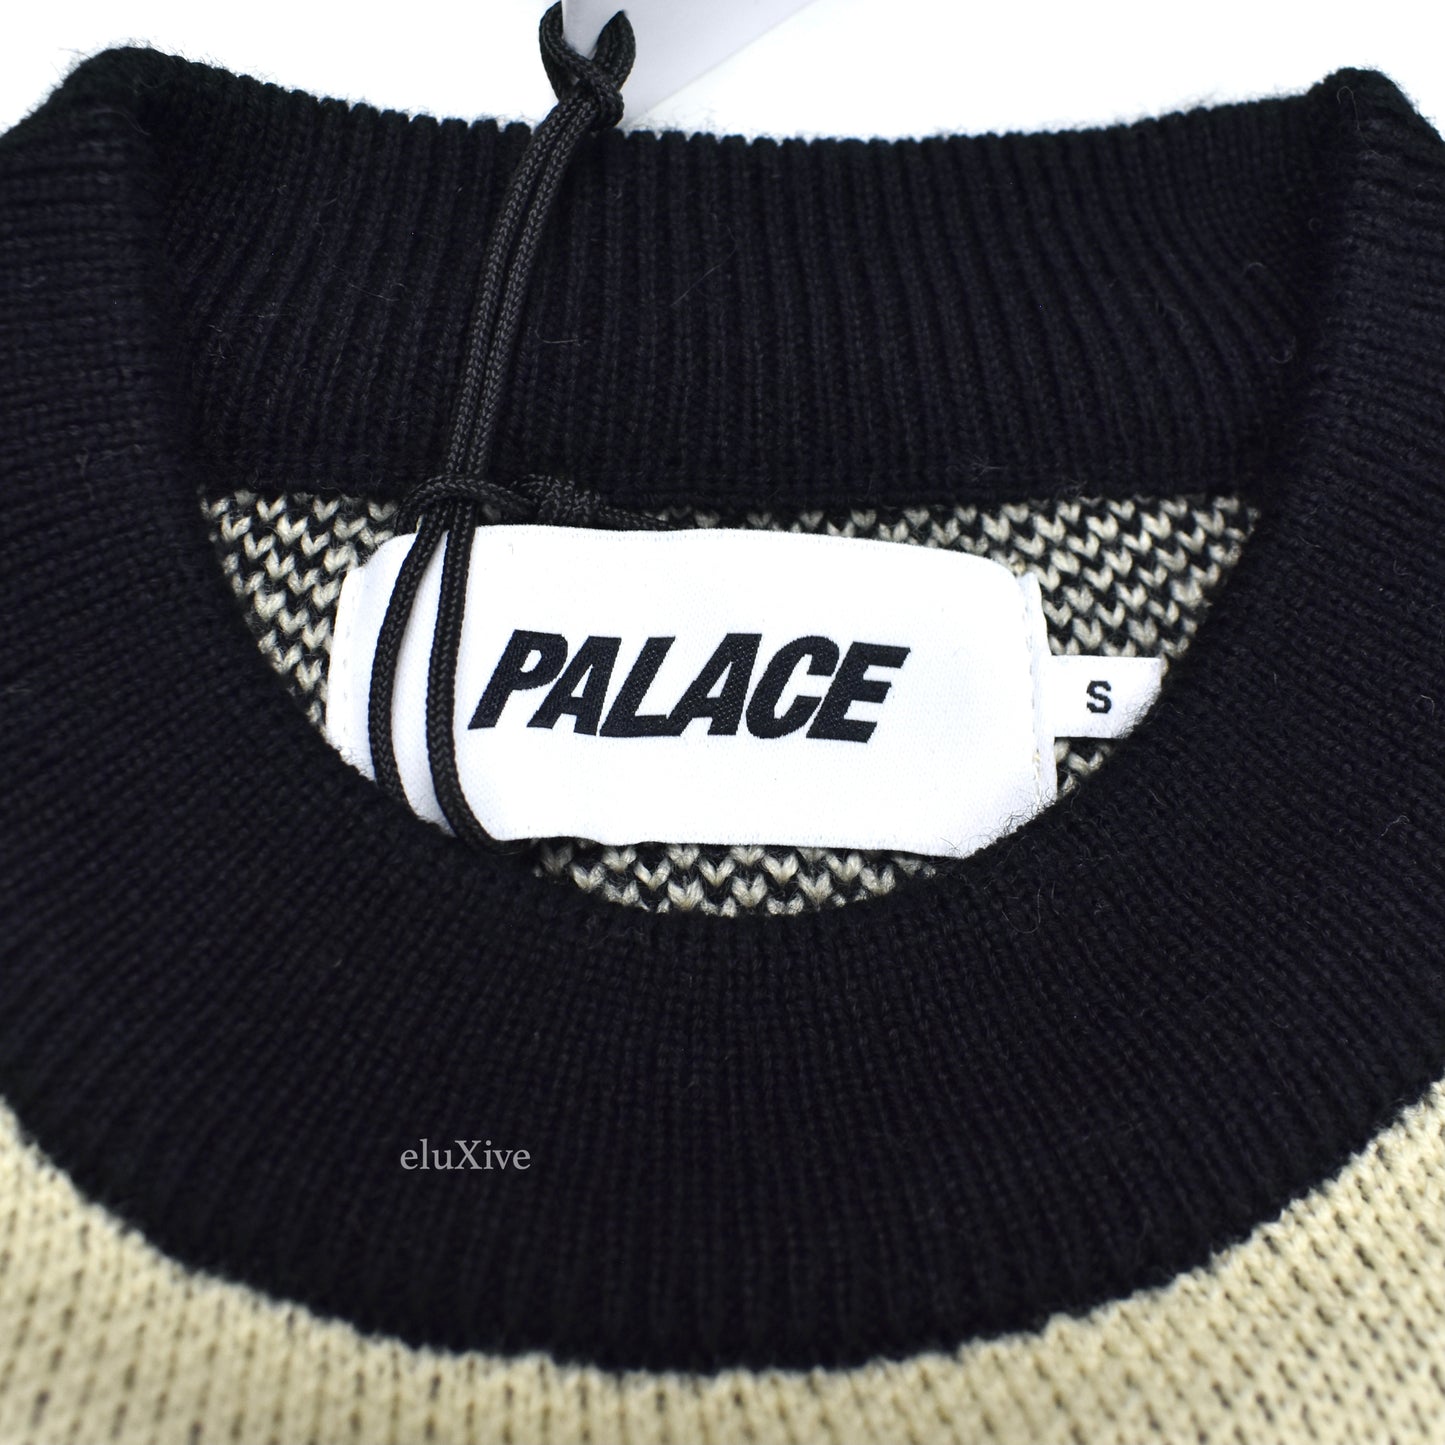 Palace - Yin Yang P-Logo Knit Sweater